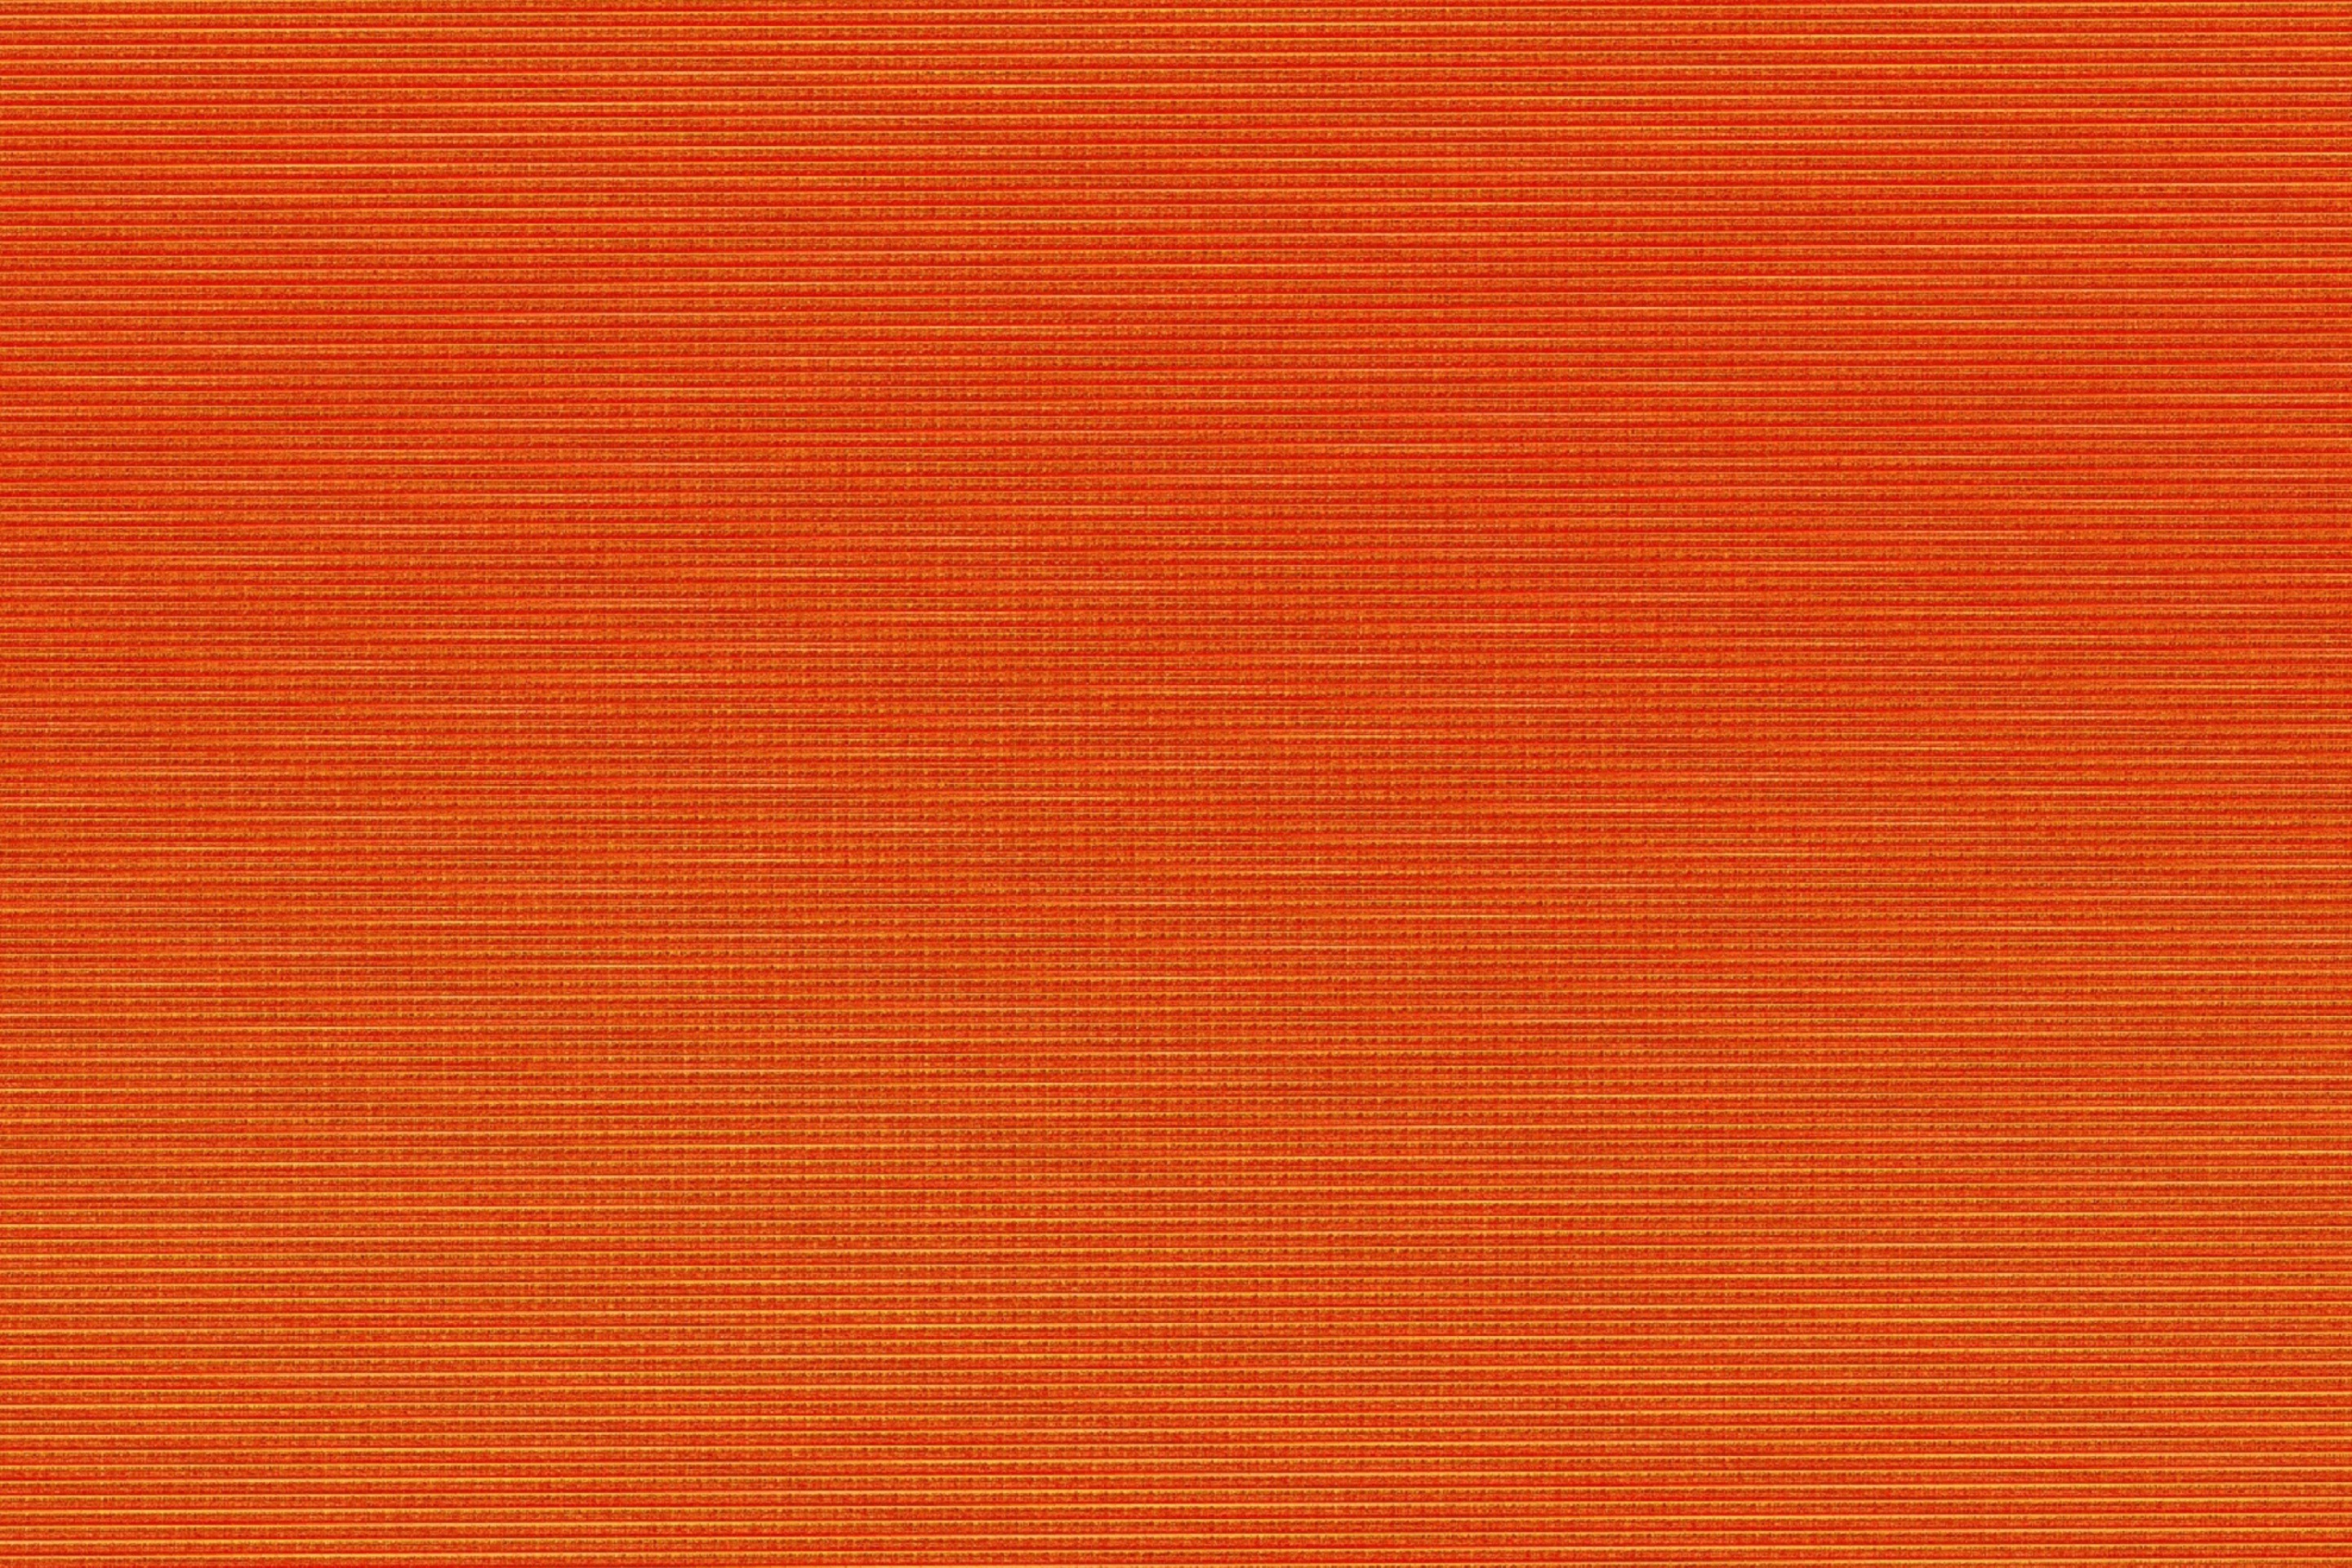 Orange texture screenshot #1 2880x1920